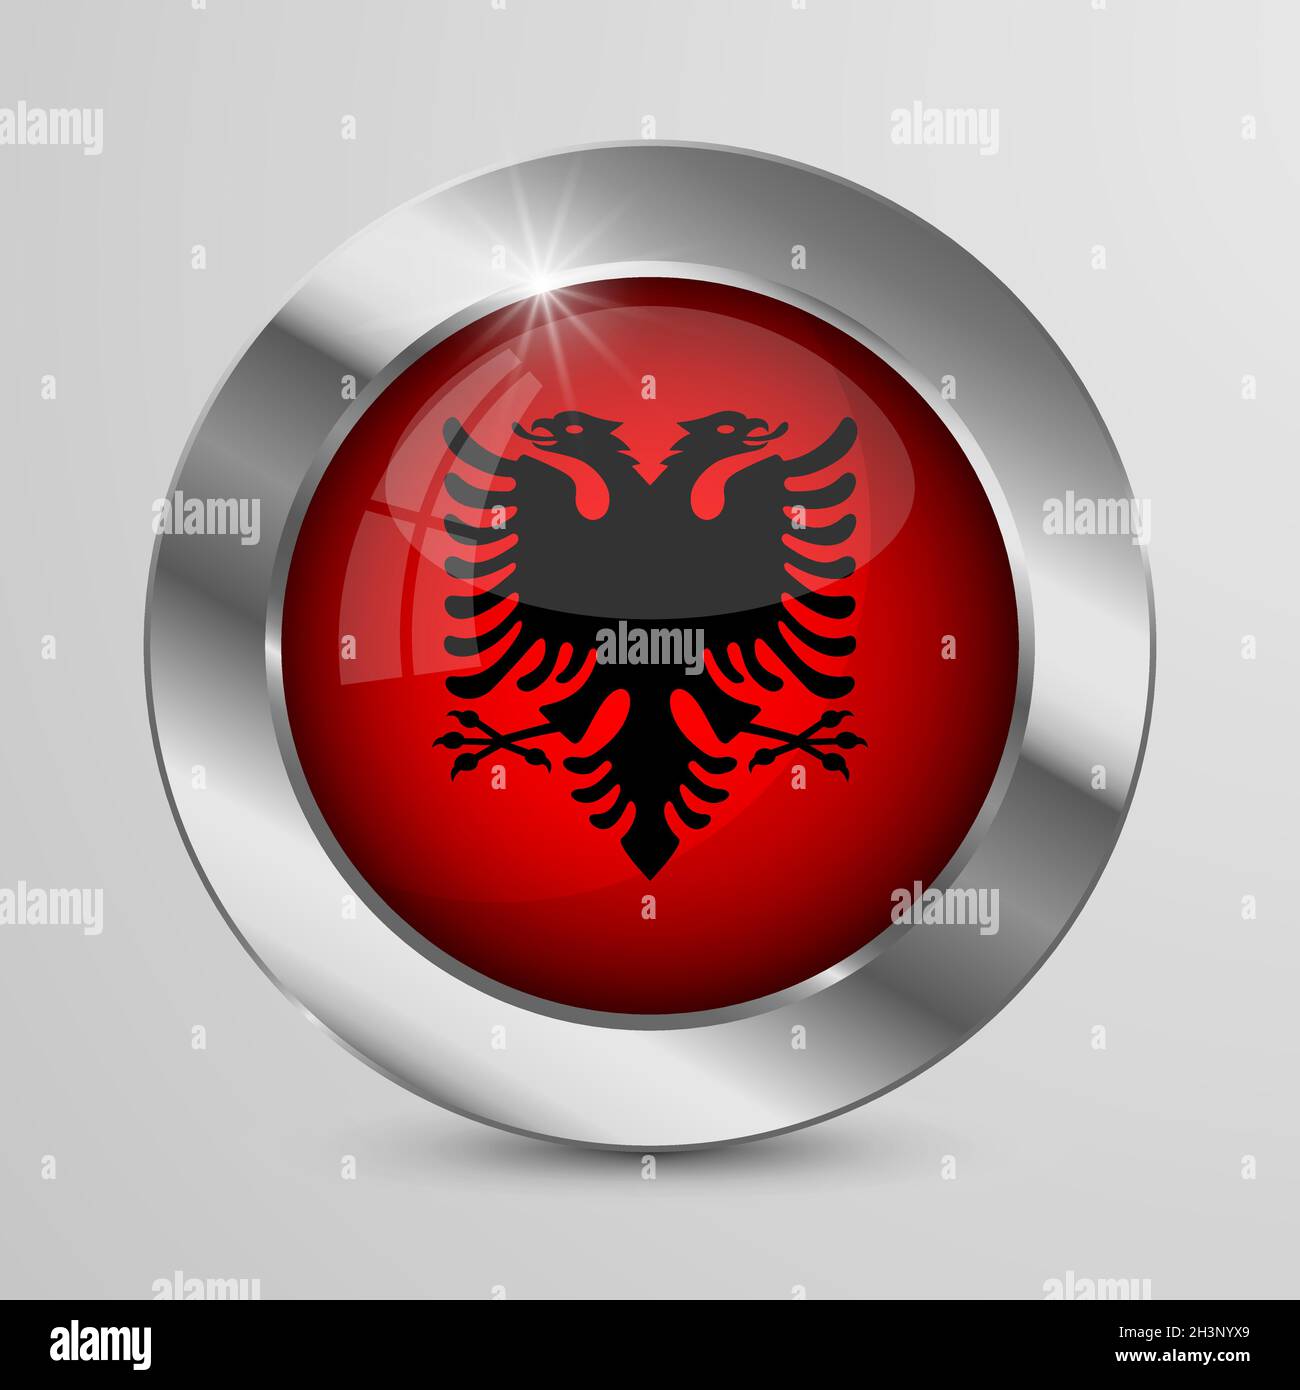 Bouton vecteur patriotique EPS10 avec couleurs drapeau albanais.Un élément d'impact pour l'utilisation que vous voulez en faire. Illustration de Vecteur